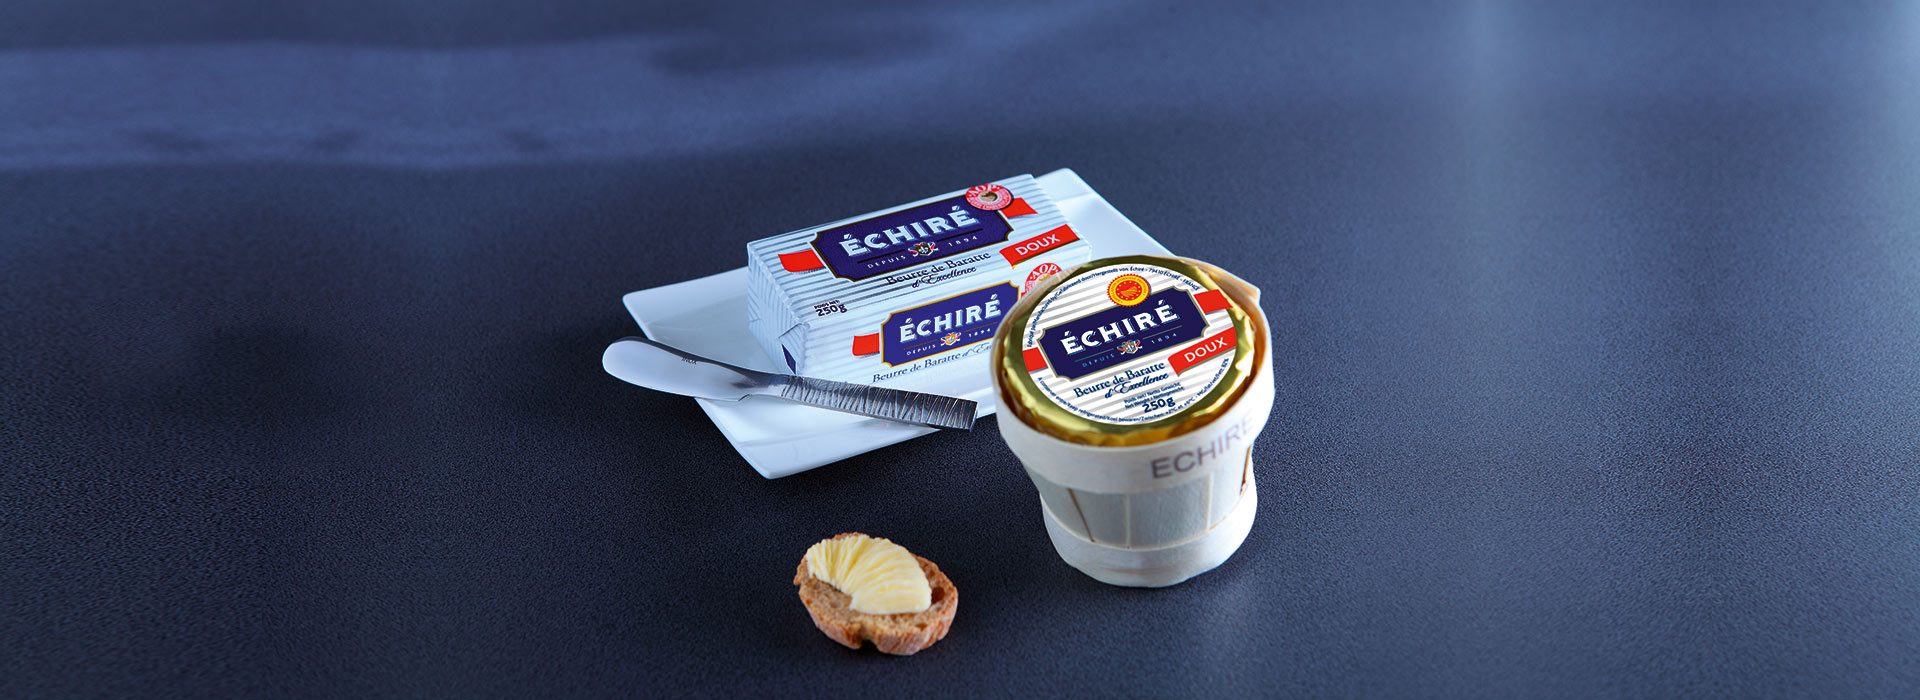 Beurre d'excellence Echiré - Beurre premium - Depuis 1894 - Echiré